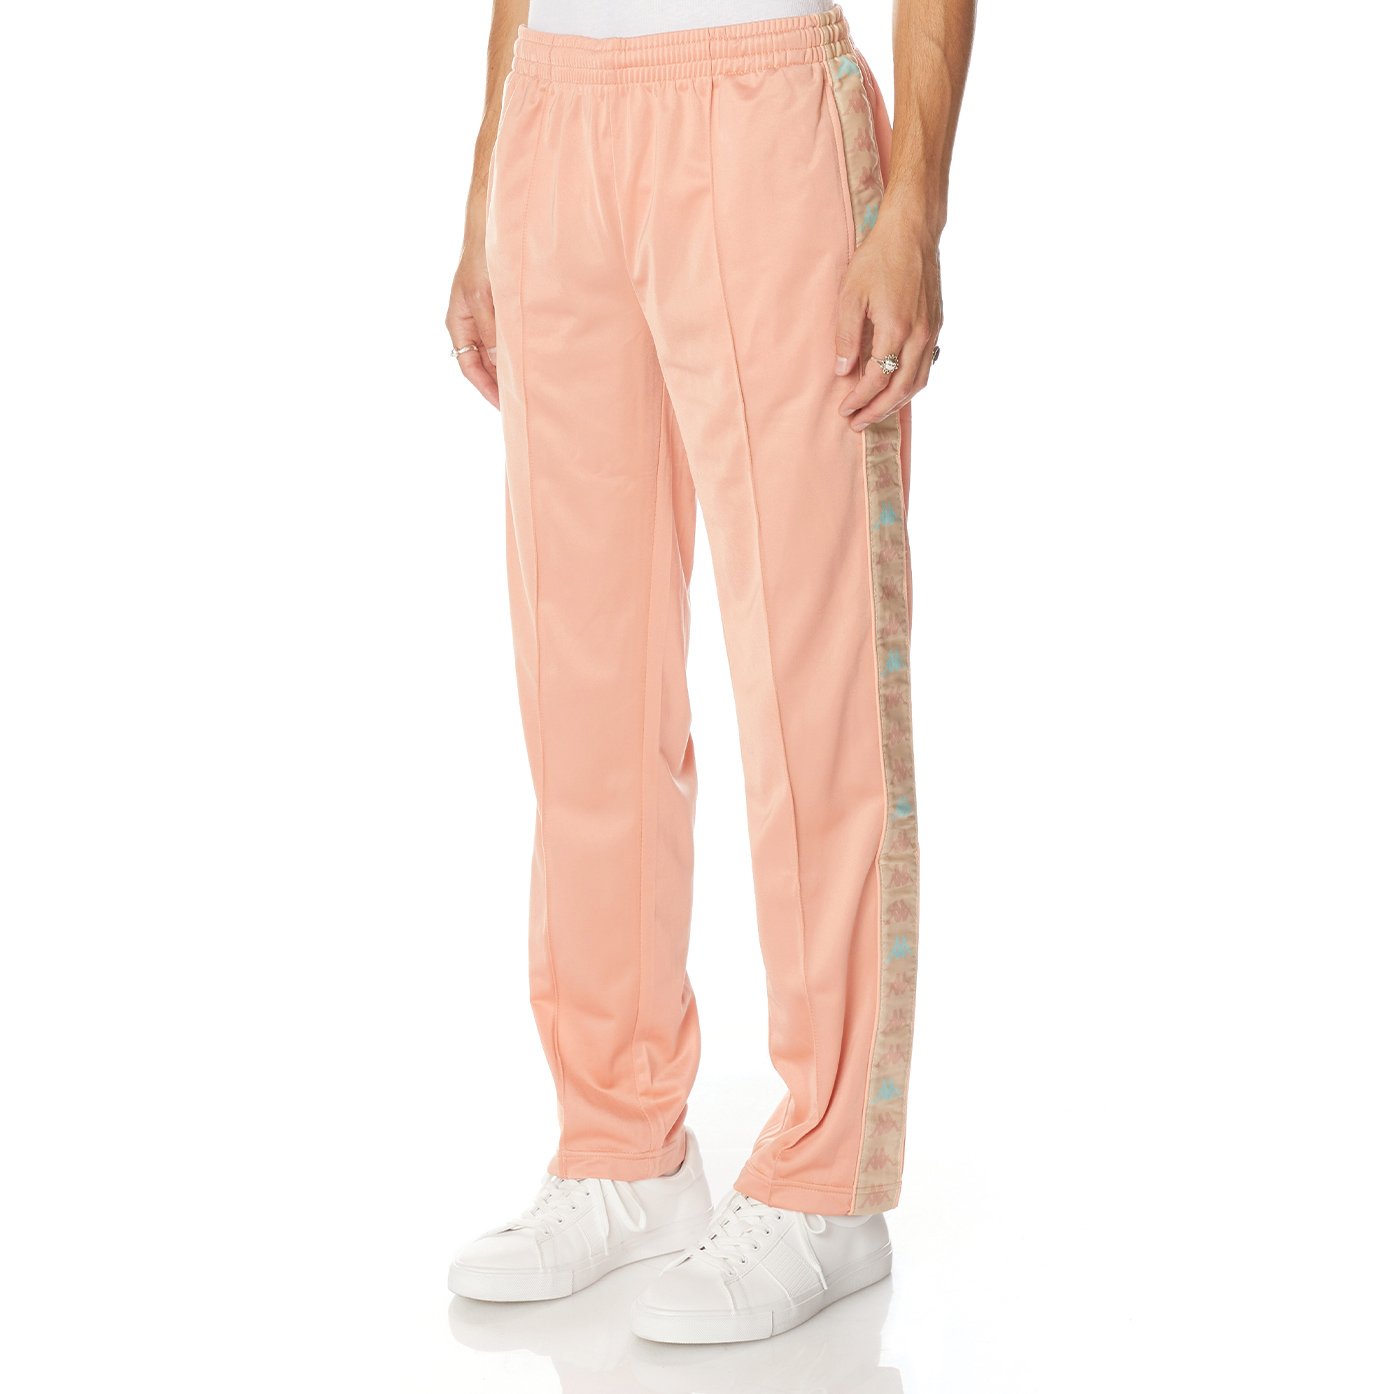 Pantalón Dugrot rosa hombre - imagen 4